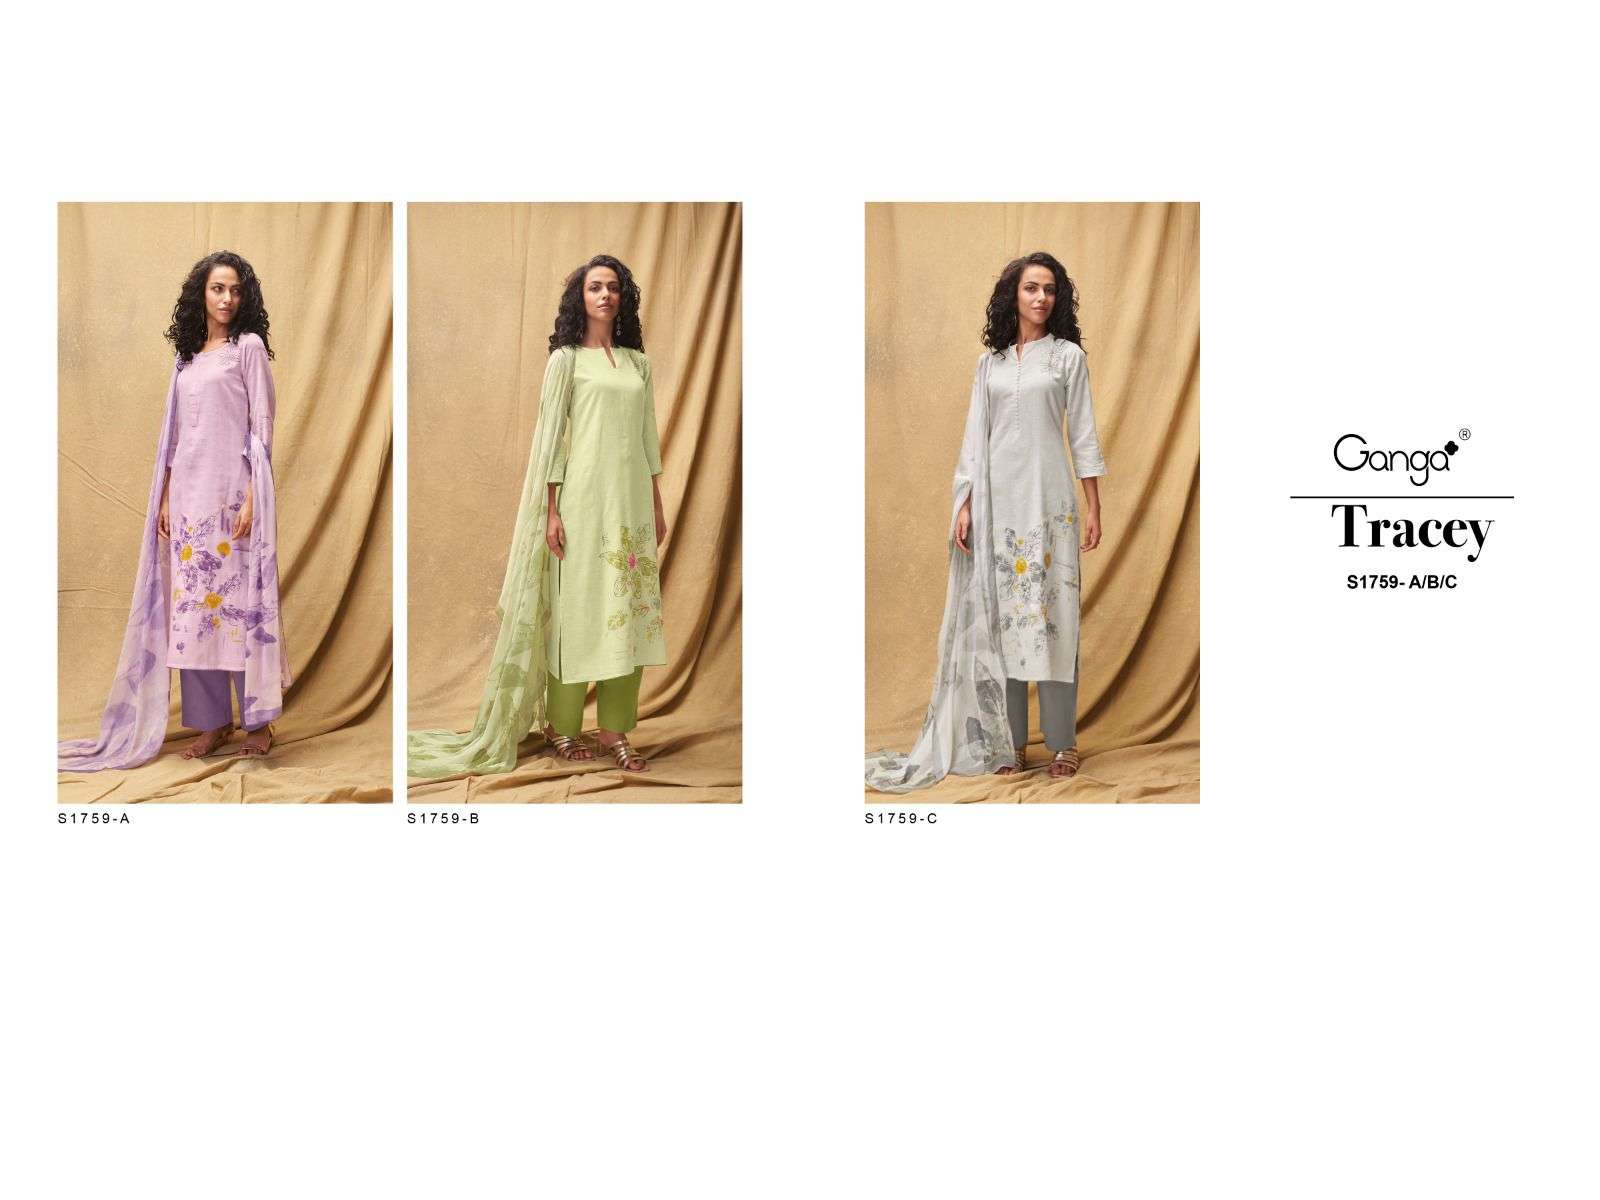 ganga tracey 1759 series exclusive designer salwar kameez catalogue wholesaler surat